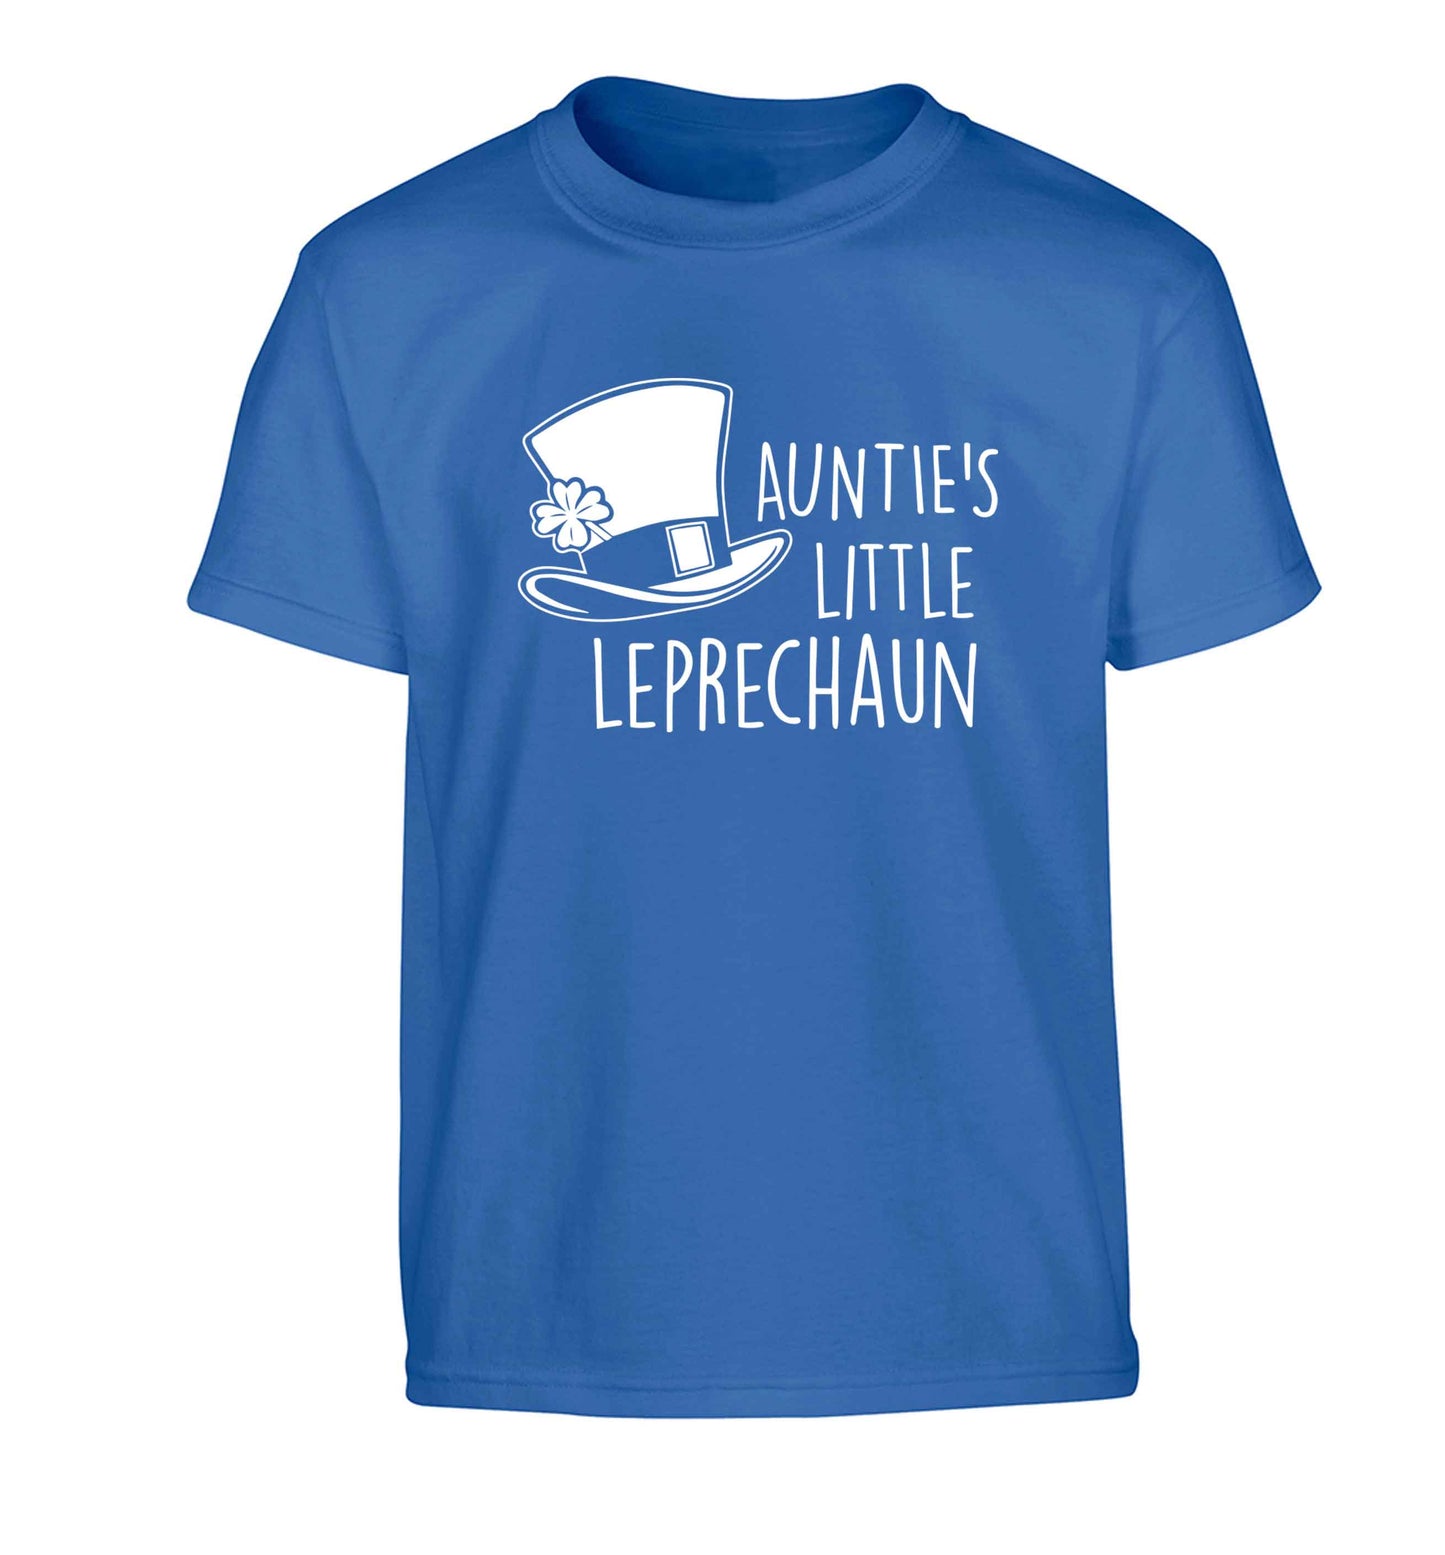 Auntie's little leprechaun Children's blue Tshirt 12-13 Years